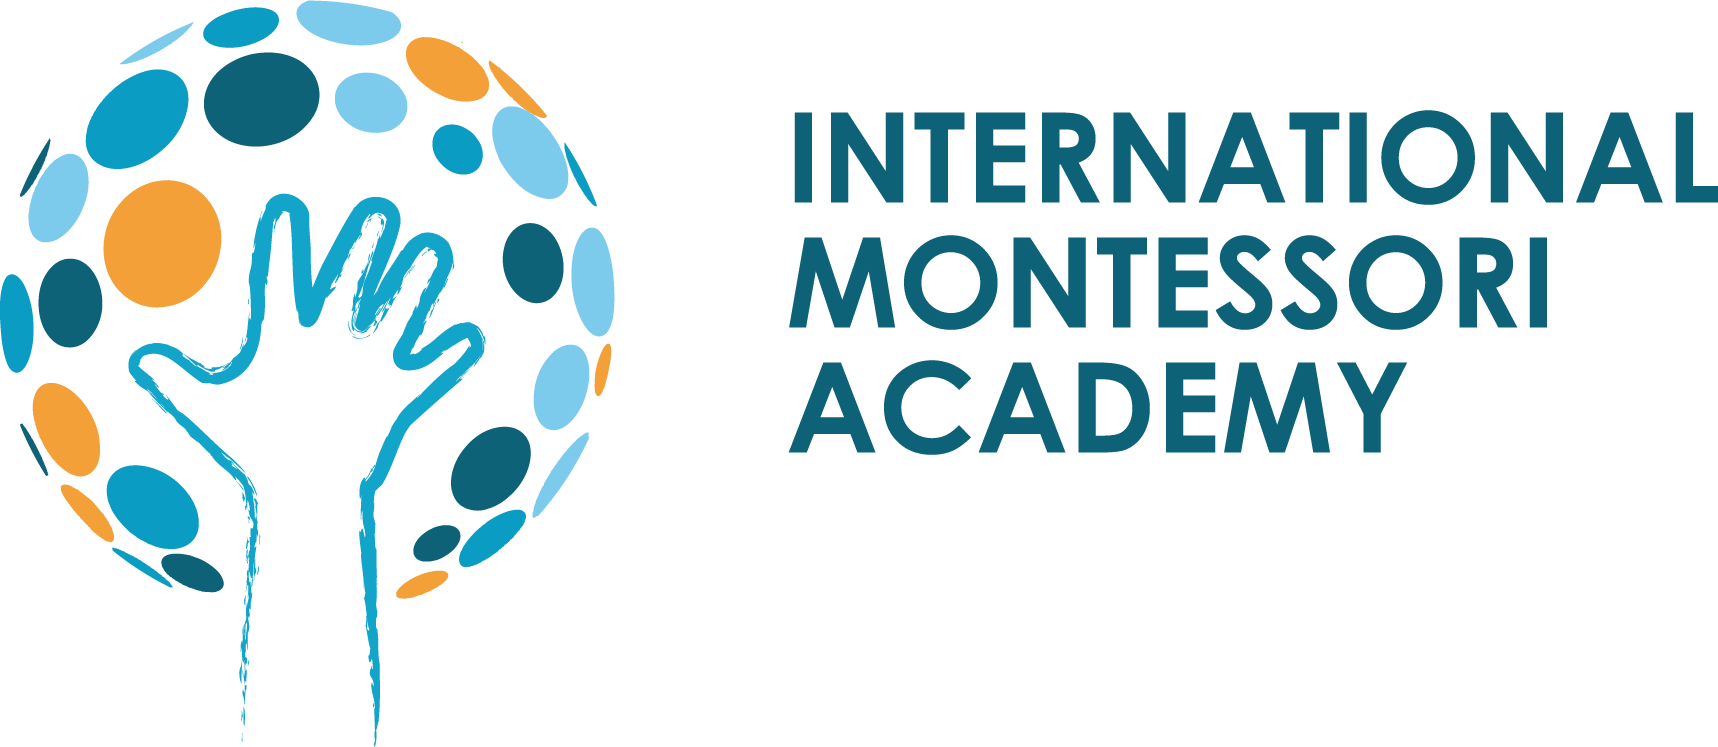 International Montessori Academy